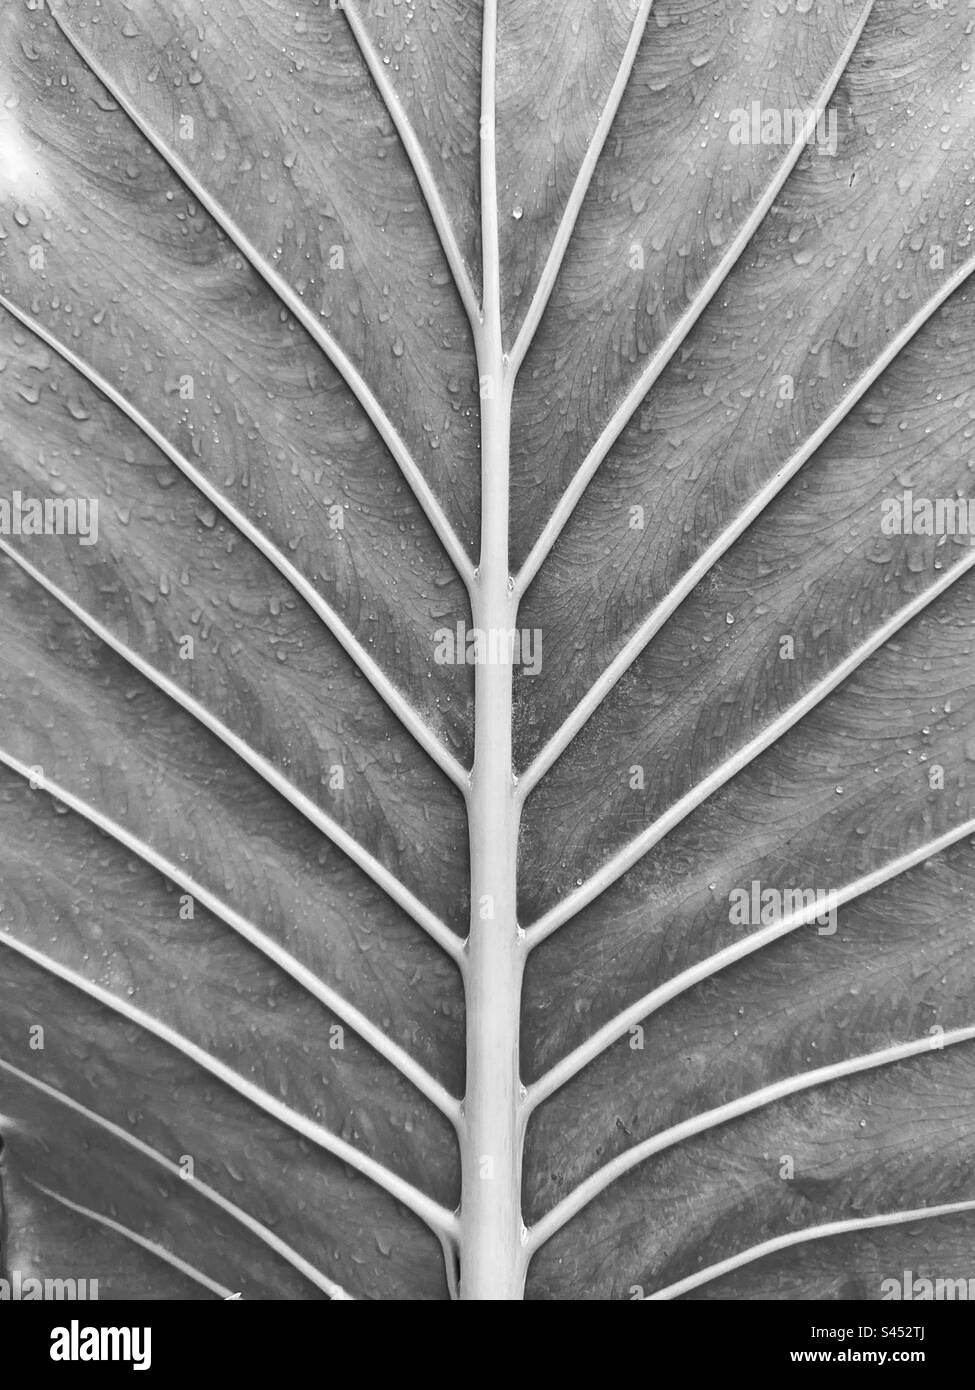 Adern und Regentropfen auf den Blättern einer grossen tropischen Pflanze in Schwarz und Weiß. Hintergründe. Keine Menschen. Stockfoto